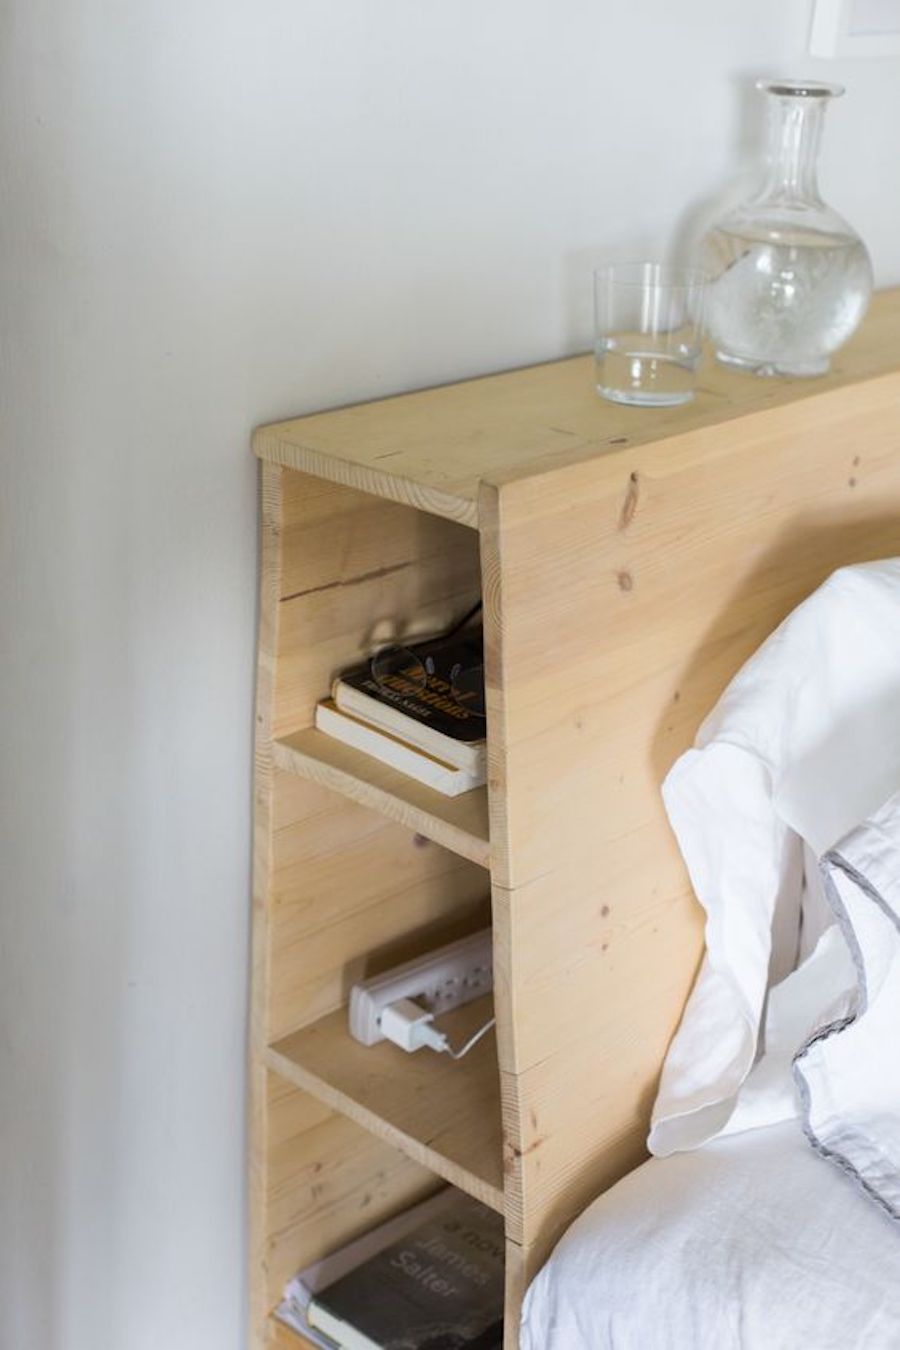 Detalle de un respaldo de cama de madera clara, en cuyo costado hay espacio para poner libros. Sobre él hay un vaso y jarro con agua. La sábana y almohada de la cama son blancas.